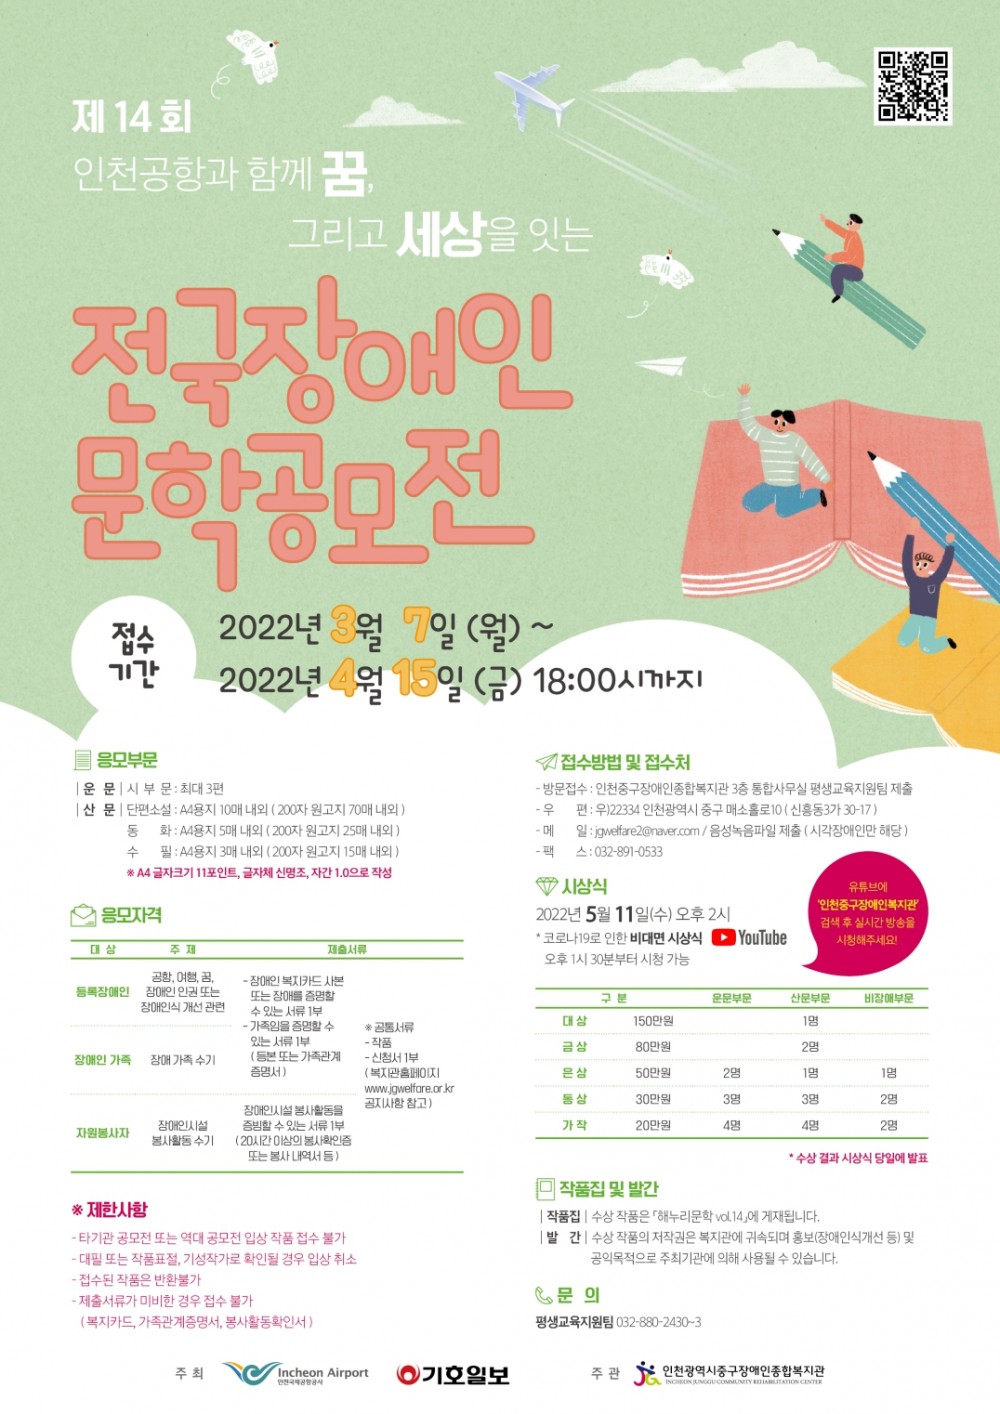 제 14회 인천공항과 함께 꿈, 그리고 세상을 잇는 전국장애인문학공모전 홍보 포스터